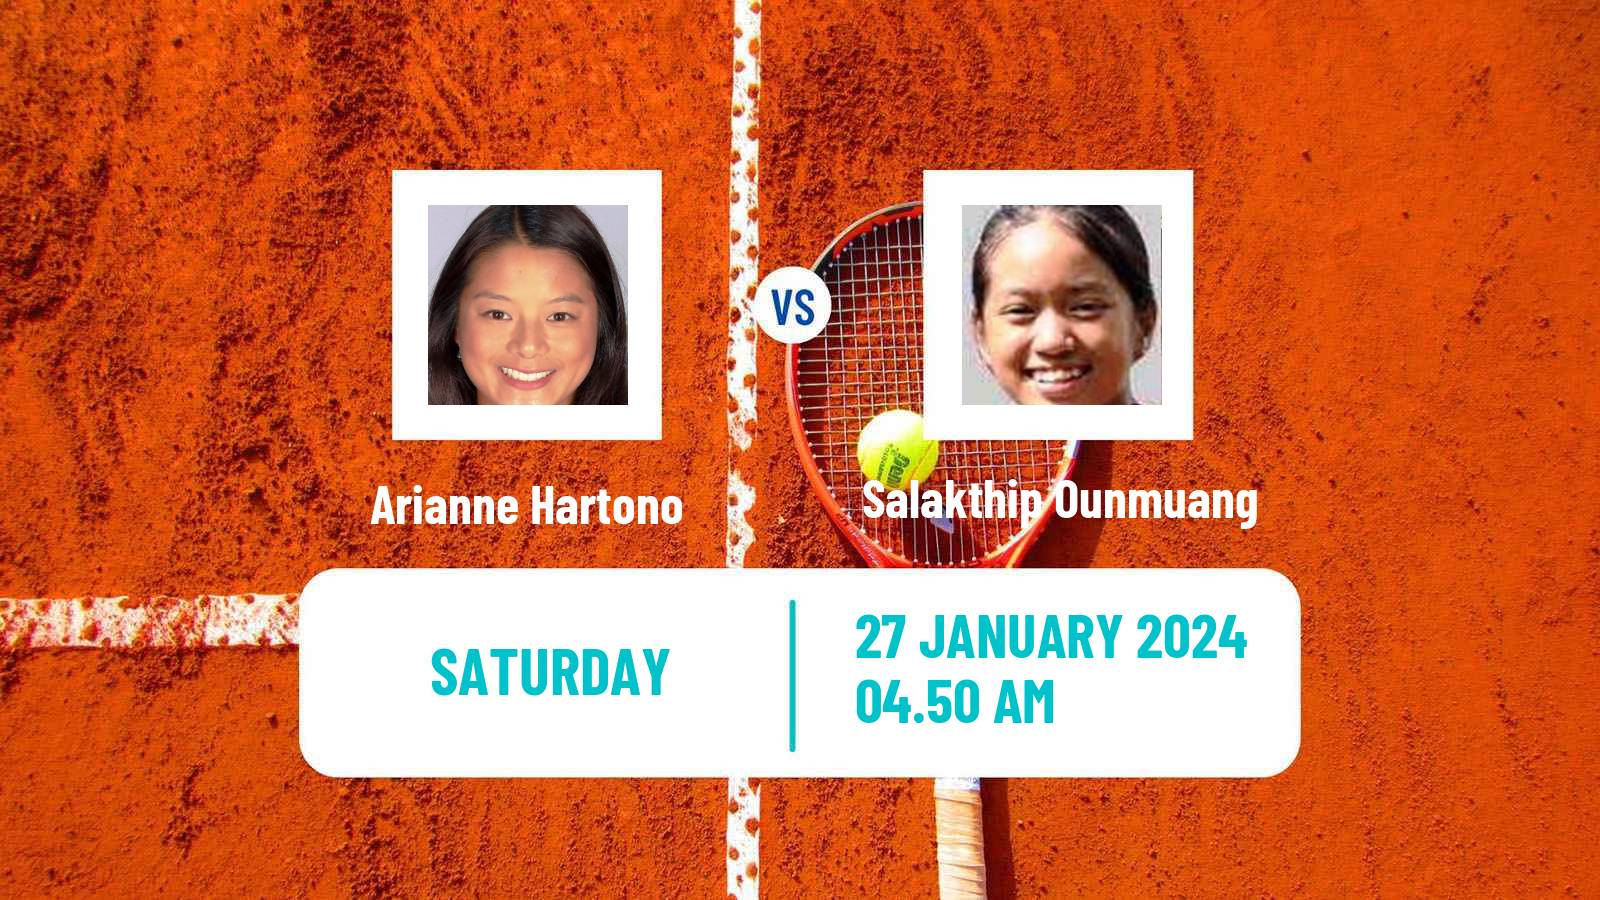 Tennis WTA Hua Hin Arianne Hartono - Salakthip Ounmuang